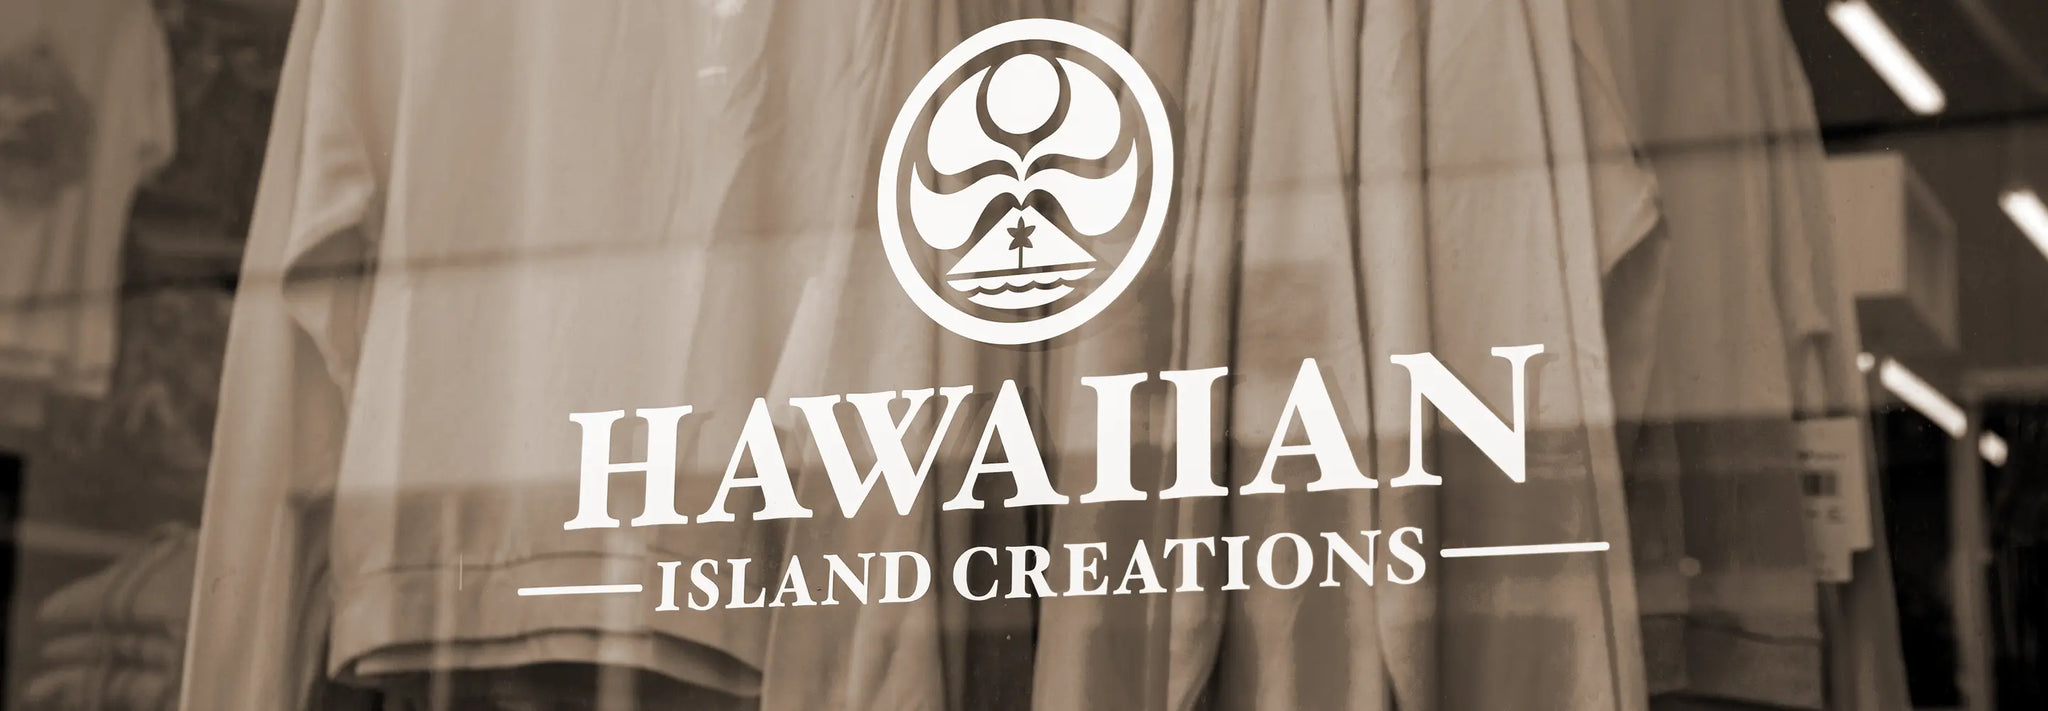 Hawaiian Island Creations Store Window